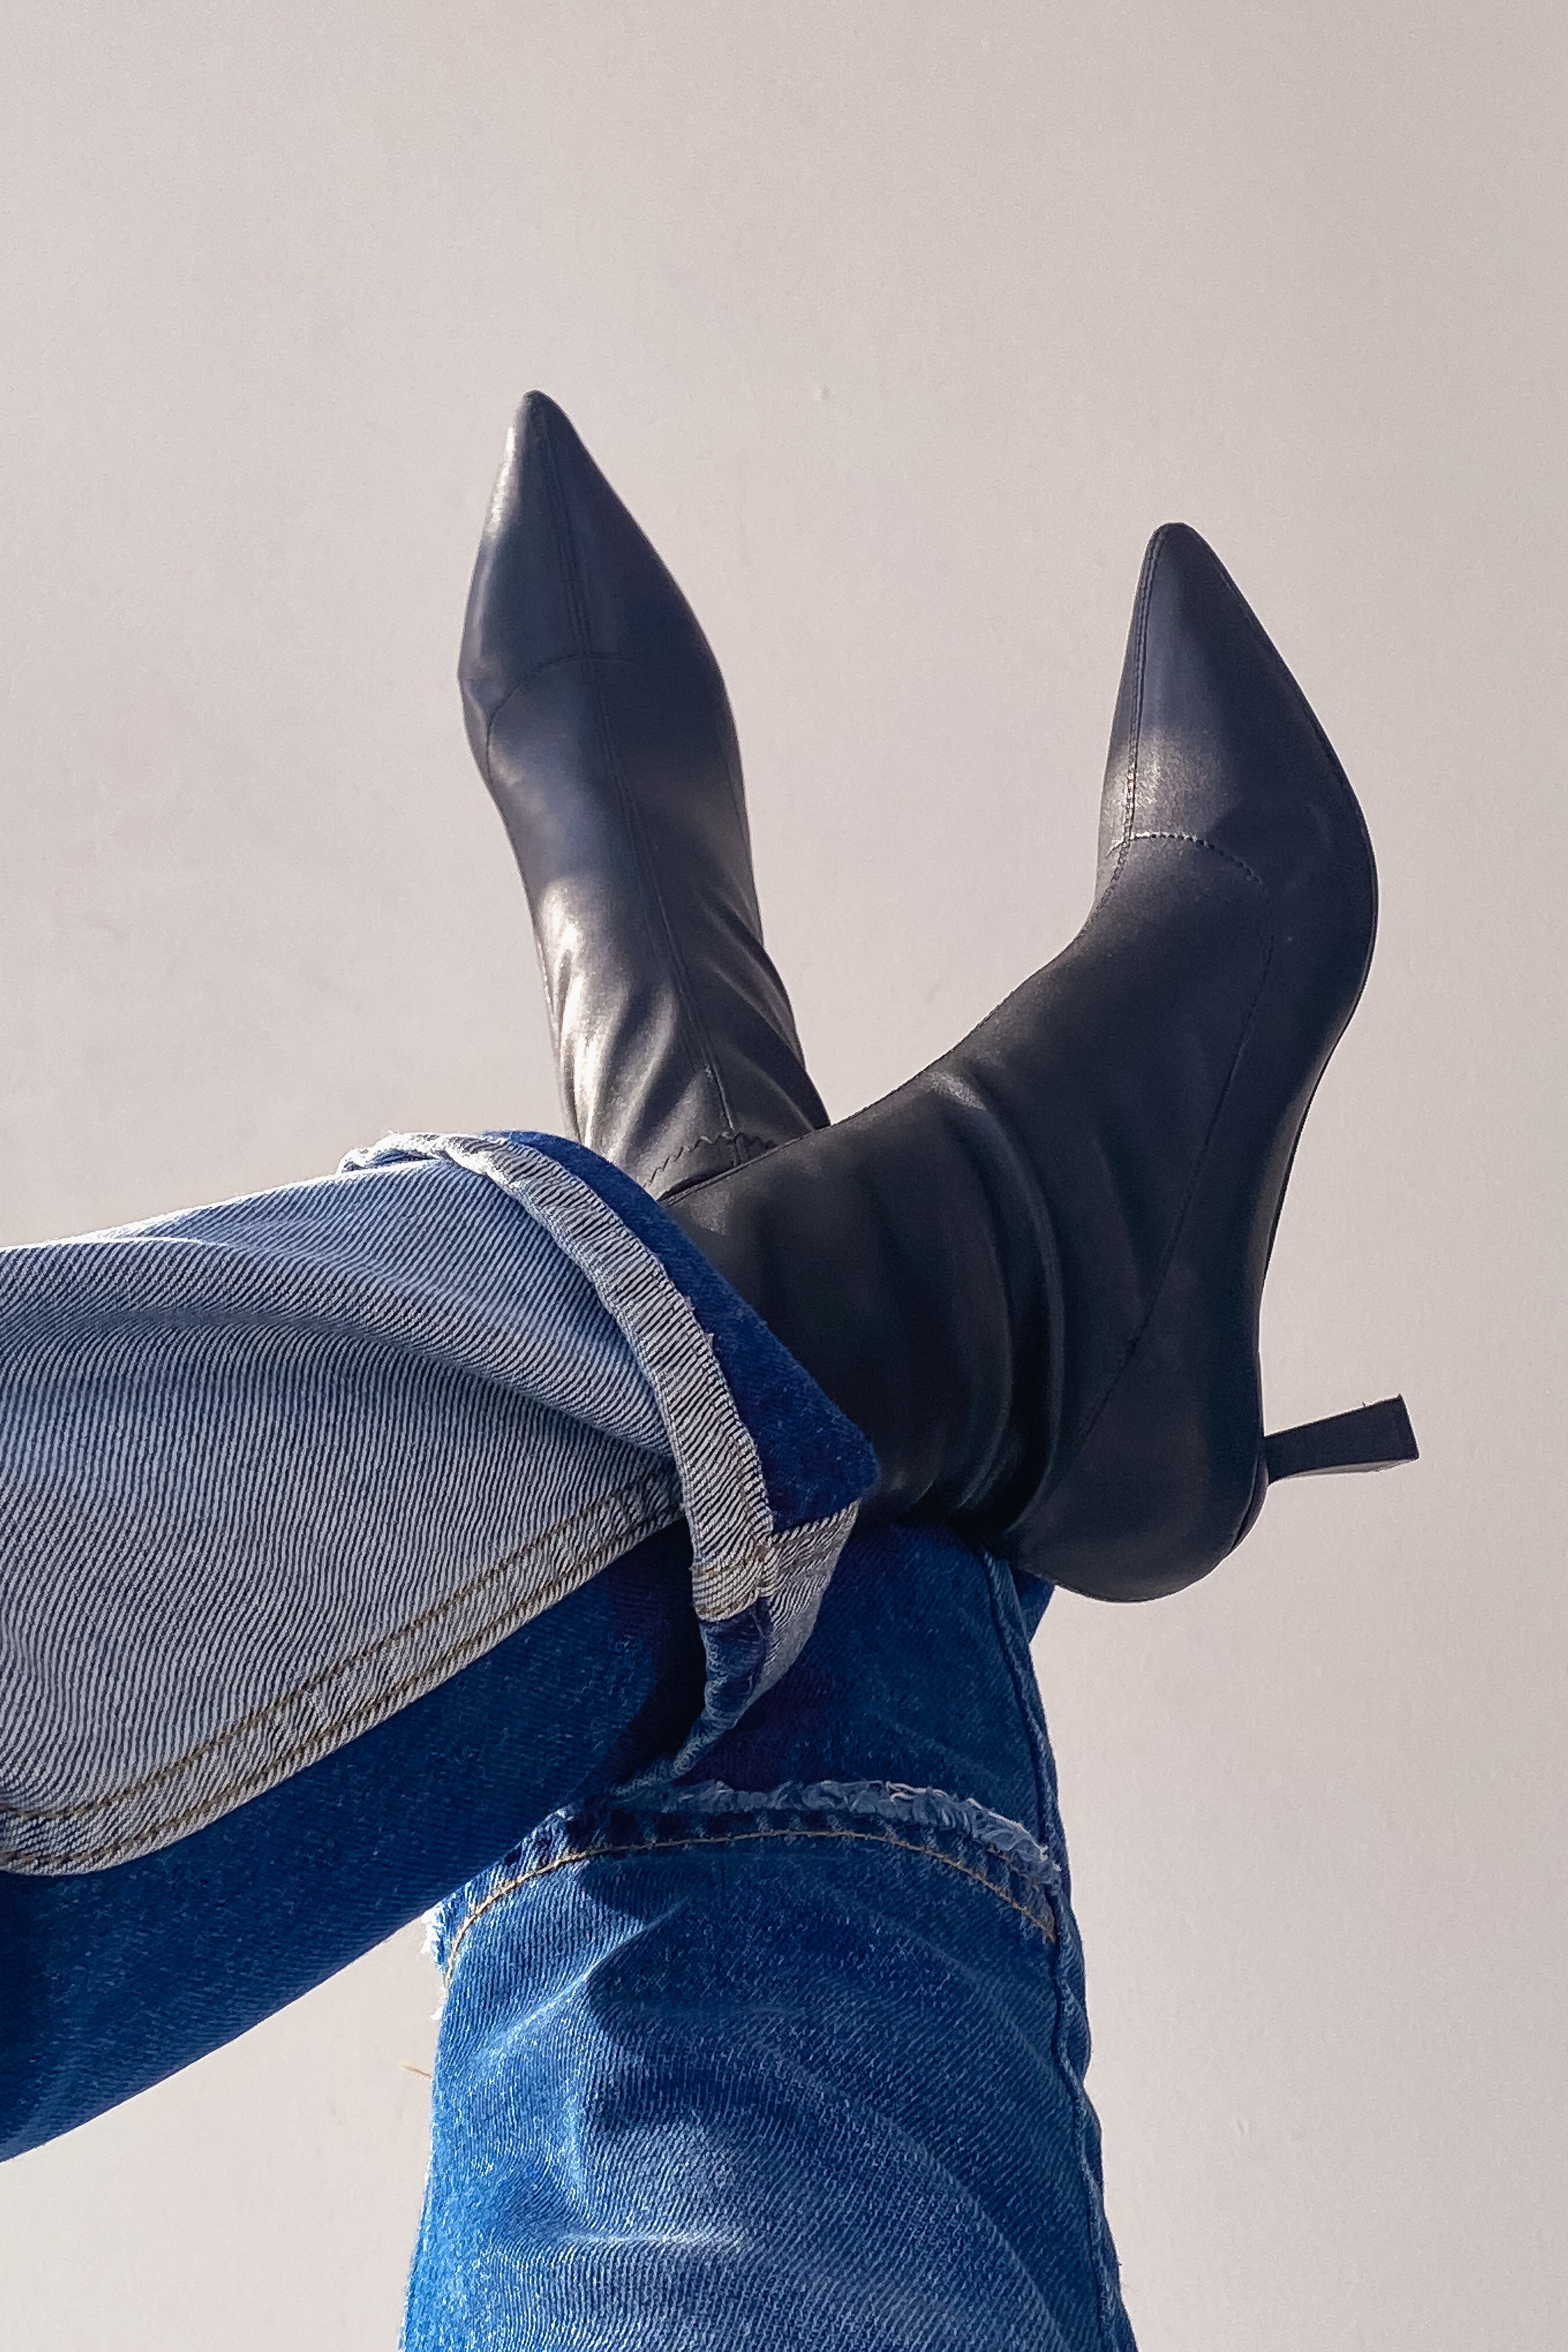 Loravo Kadın Streç Mat Deri Topuklu Bot Siyah